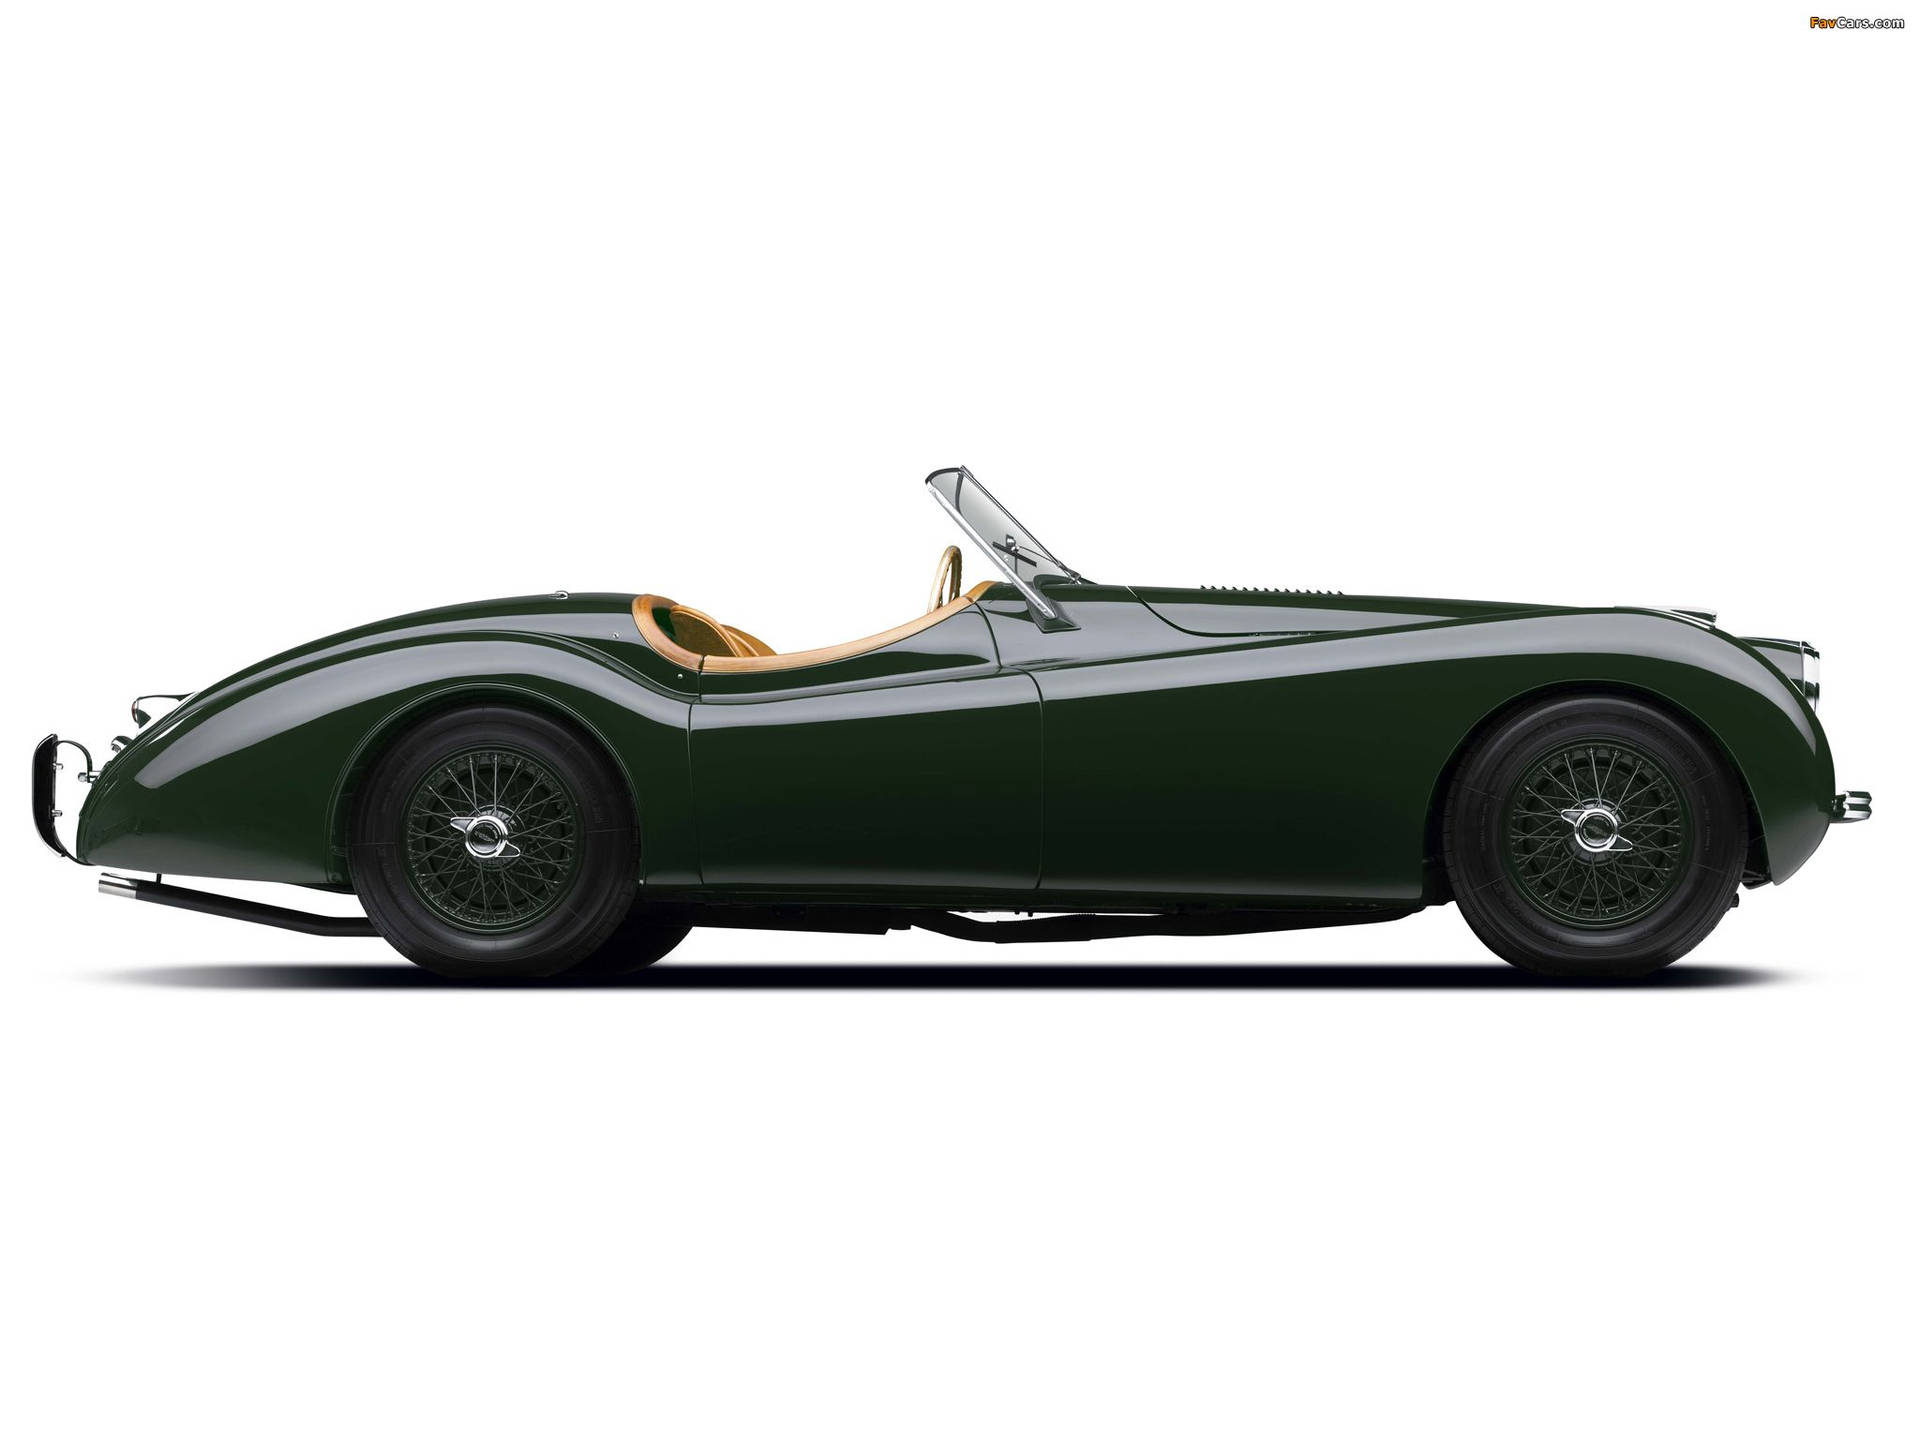 Classic Luxury - Vintage Jaguar Car Wallpaper